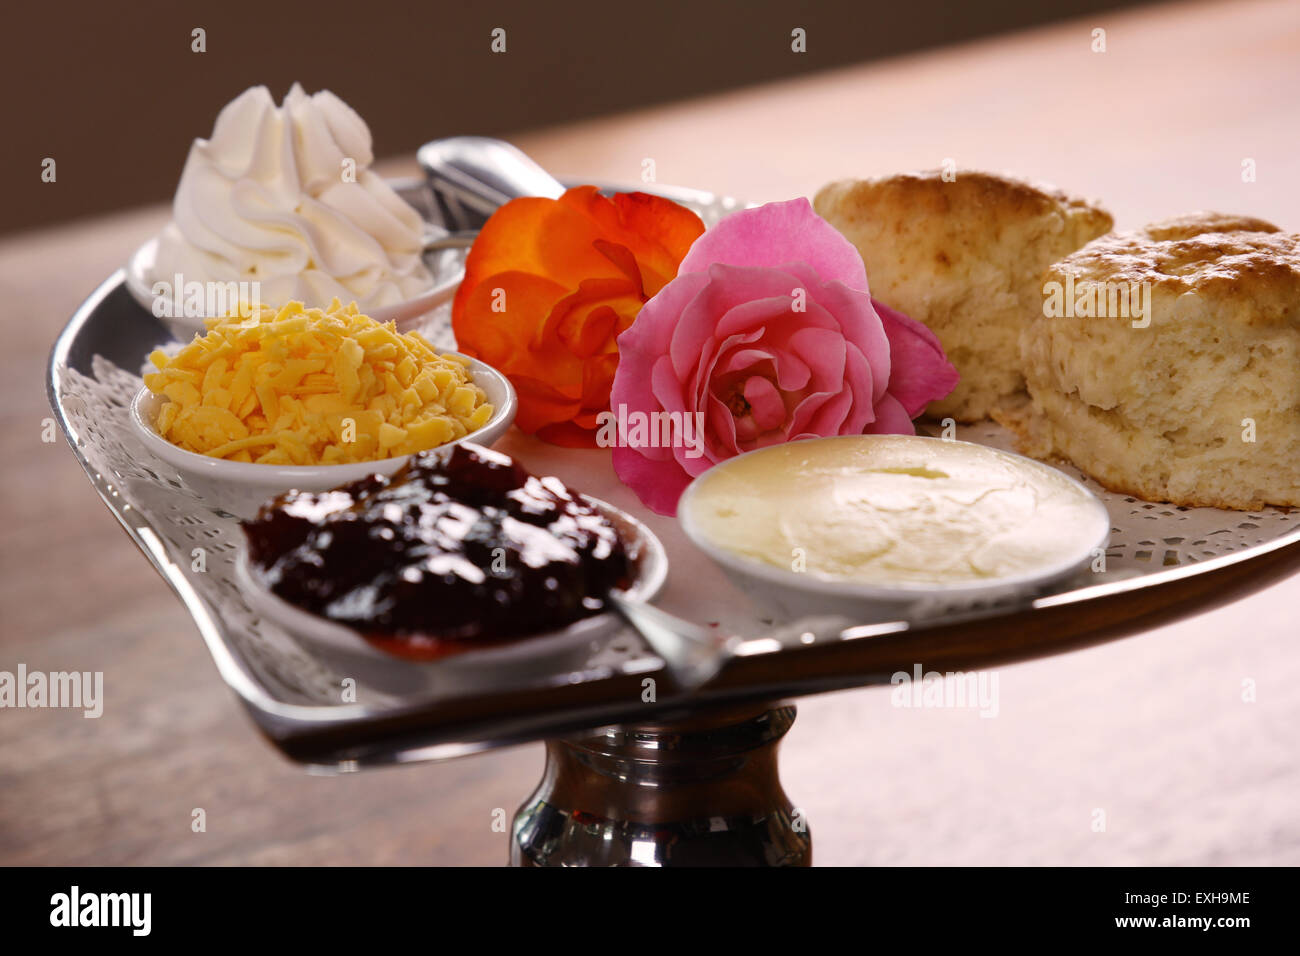 Délicieux scones beurre sur un plateau en forme de coeur argent servi avec du fromage et de la confiture de roses crème conserve sur une table en bois. Banque D'Images